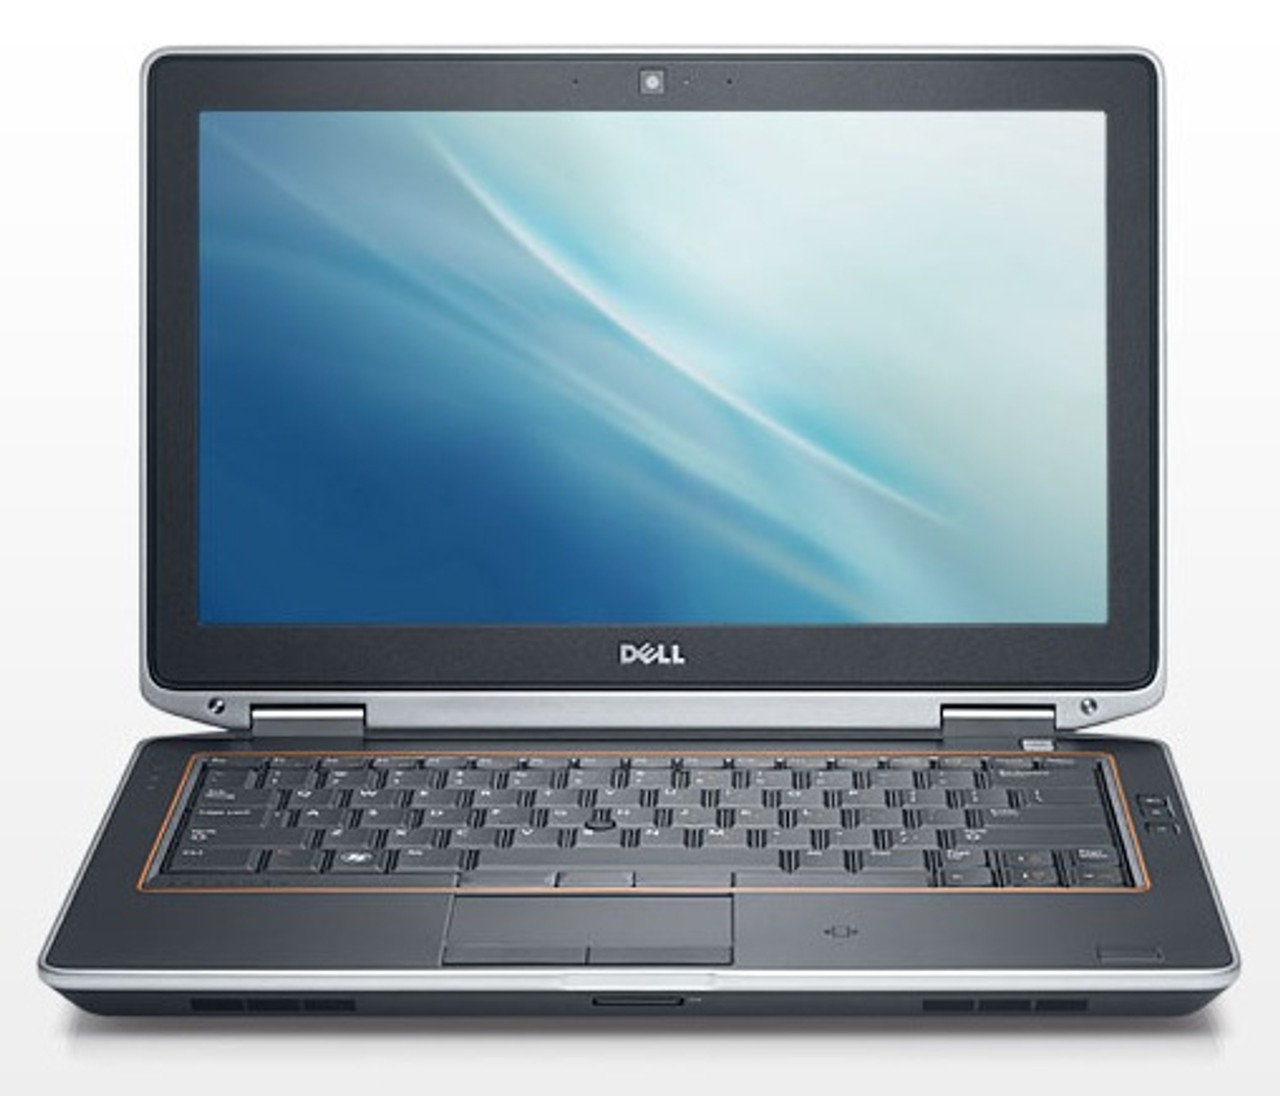 Dell Latitude E6320 Laptop 2.5 GHz I5 4GB 250GB Windows 8.1, 13.3